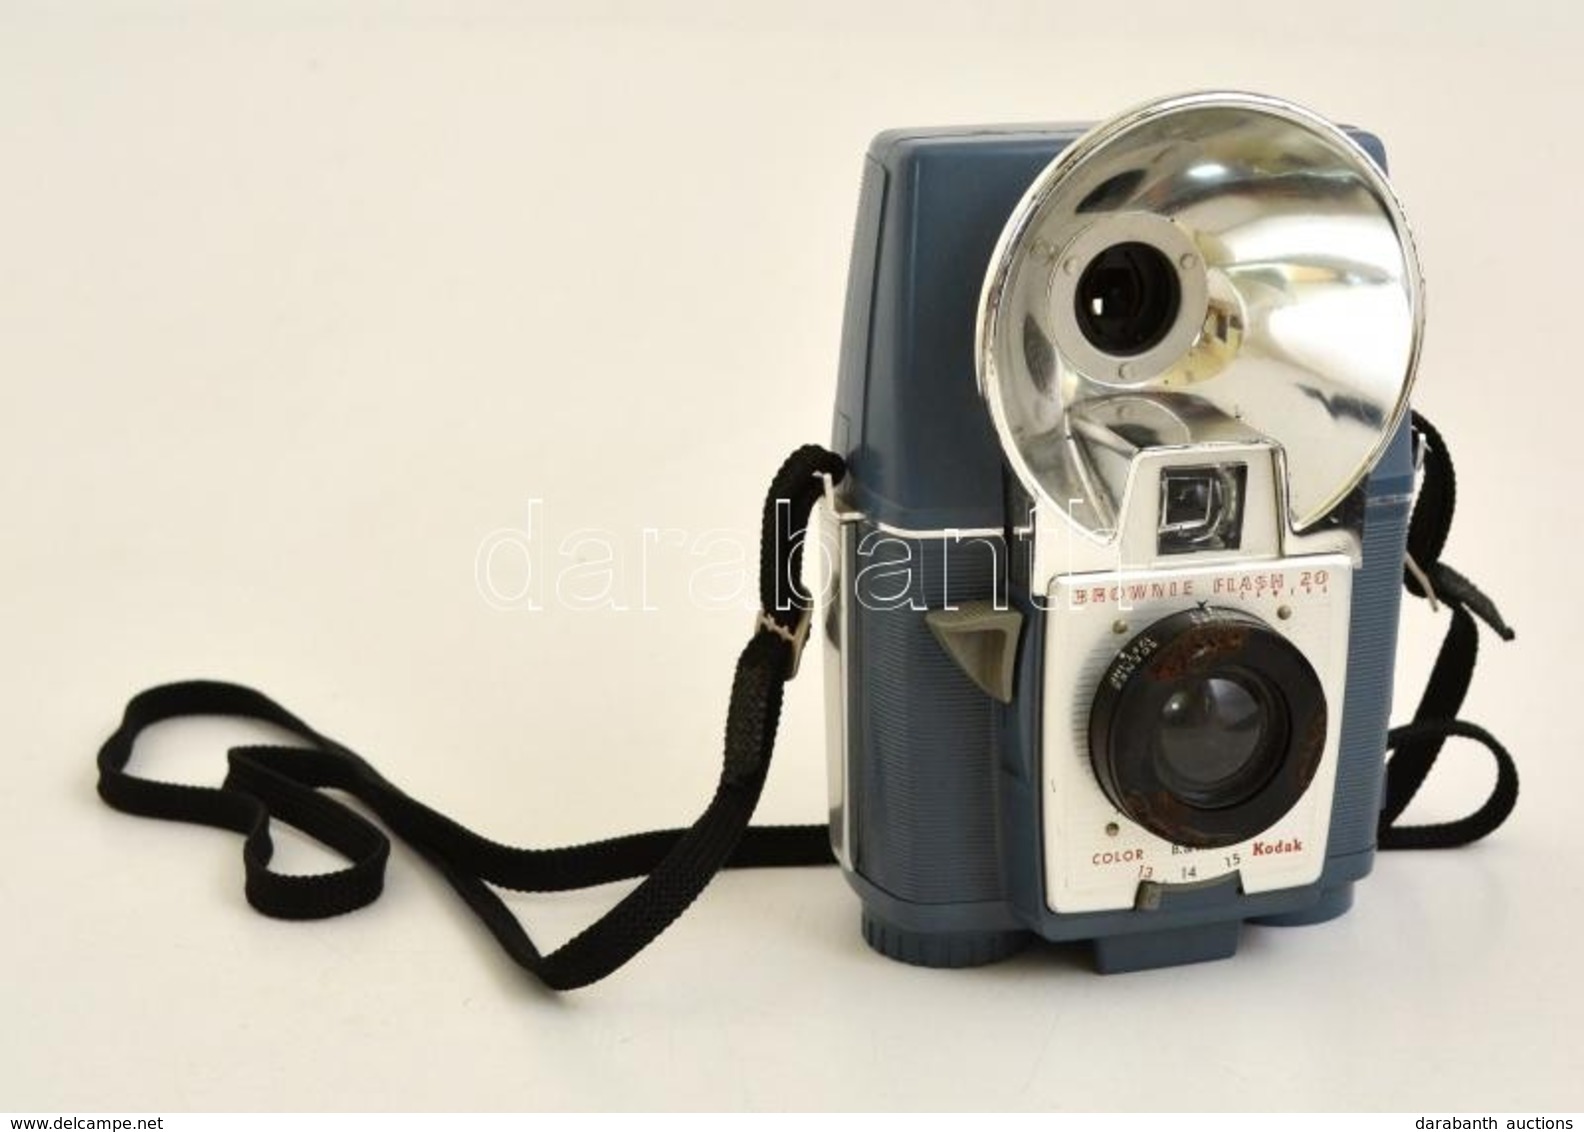 Kodak Brownie Flash 20 Box Fényképezőgép, Működőképes állapotban / Vintage Kodak Box Camera, In Working Condition - Cámaras Fotográficas